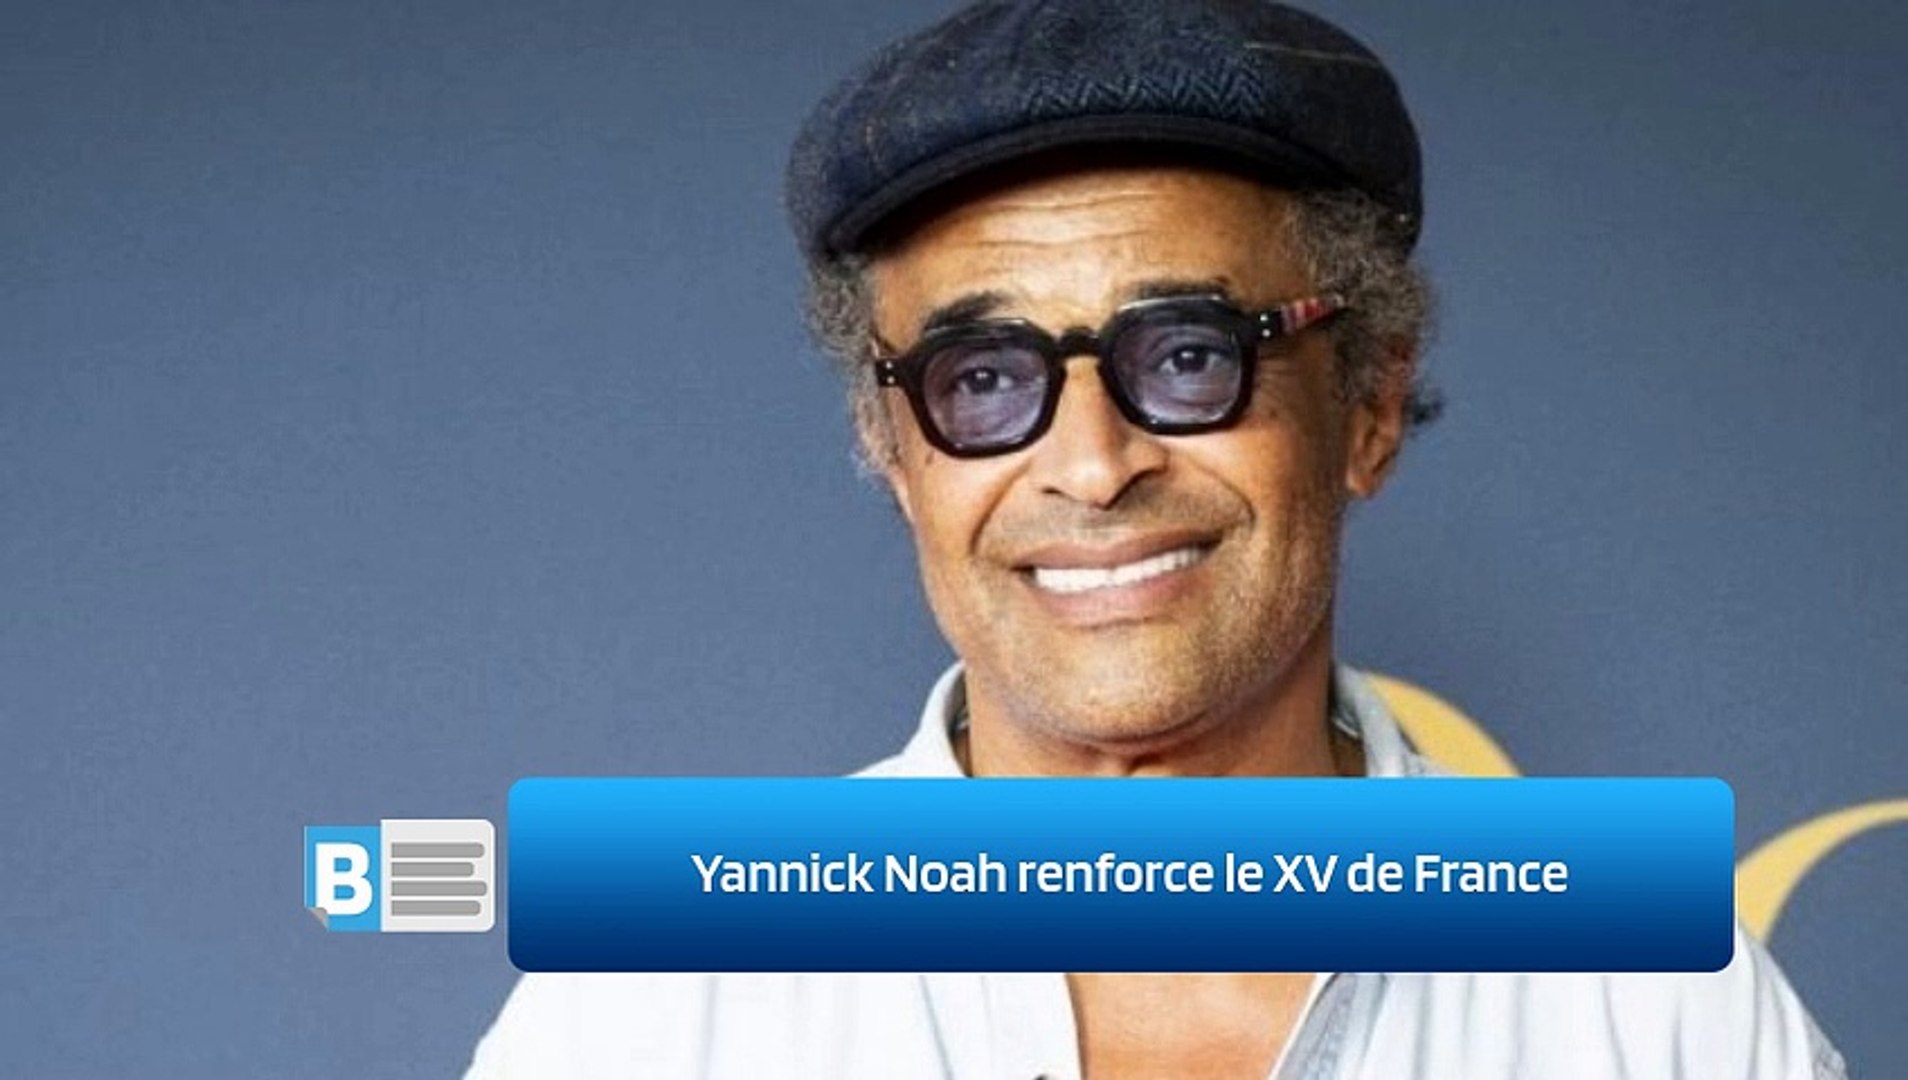 Yannick Noah renforce le XV de France - Vidéo Dailymotion